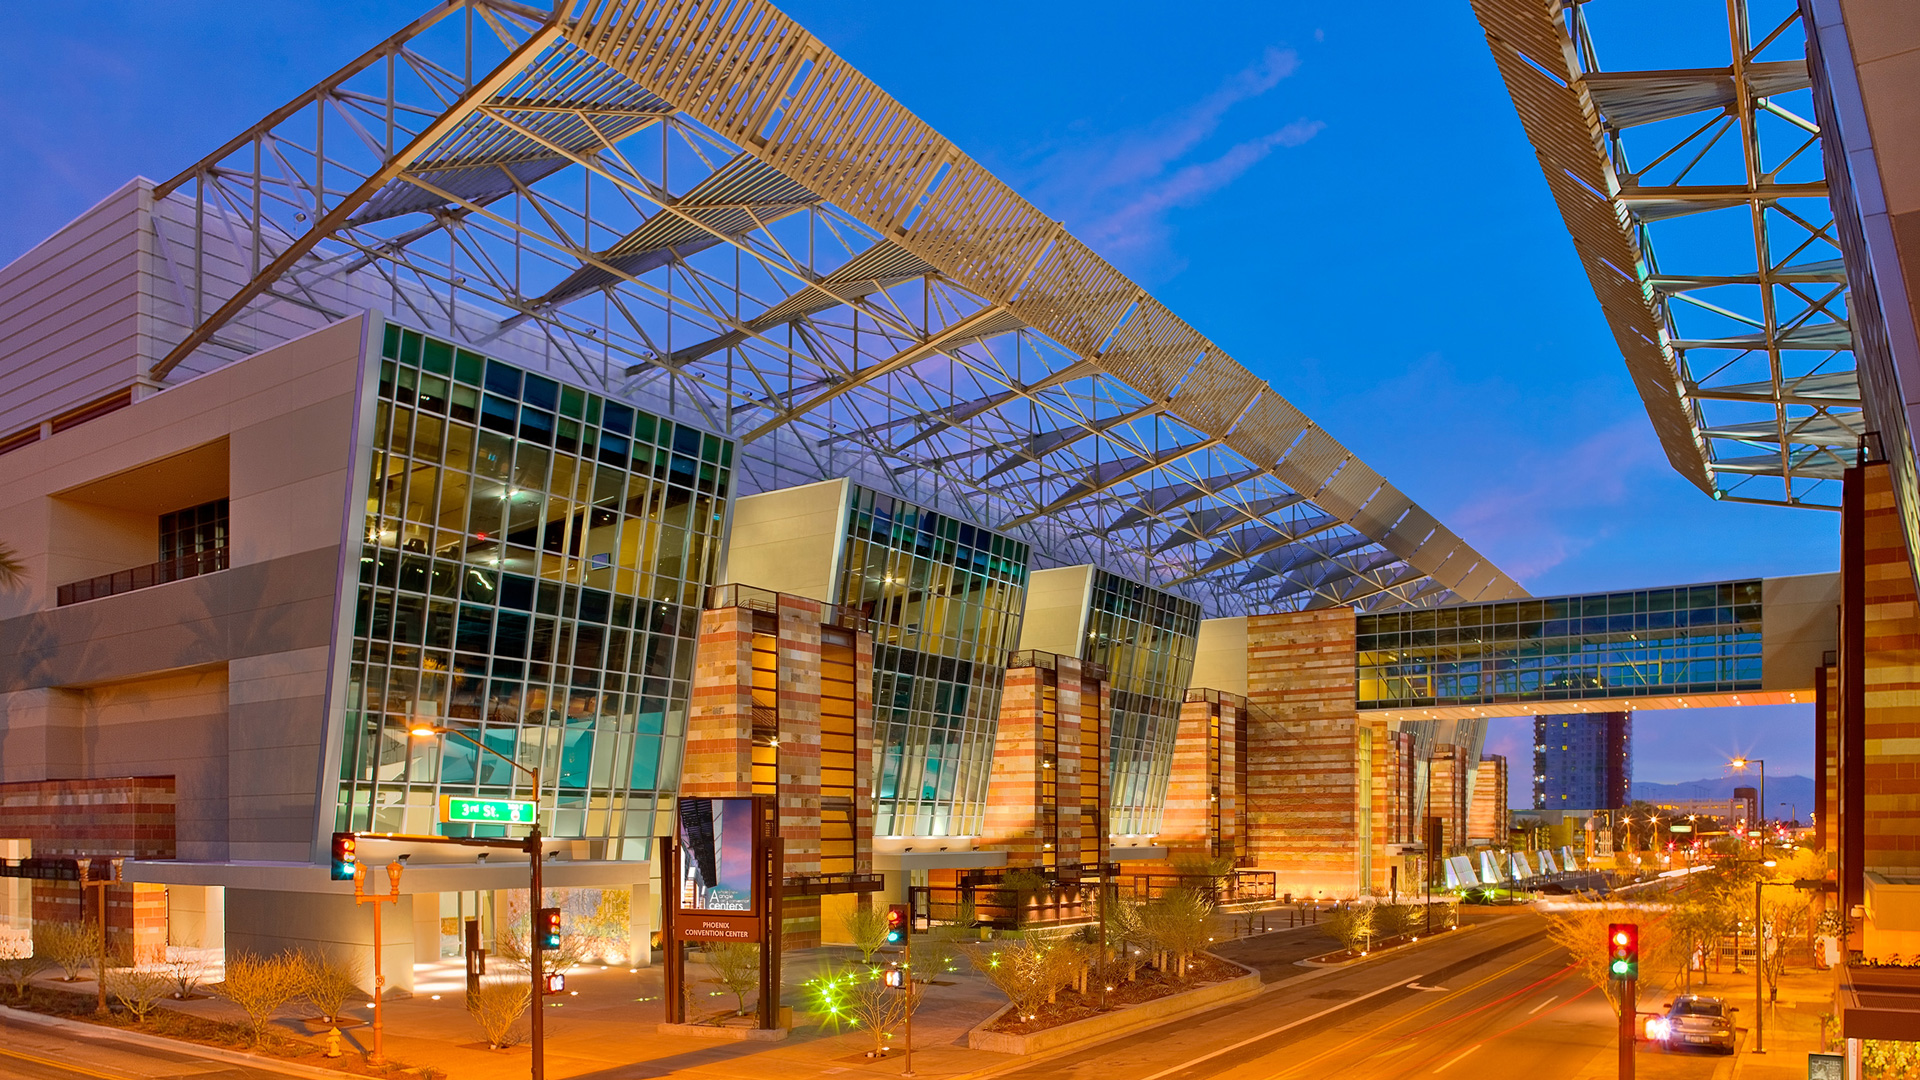 Phoenix Convention Center - Populous